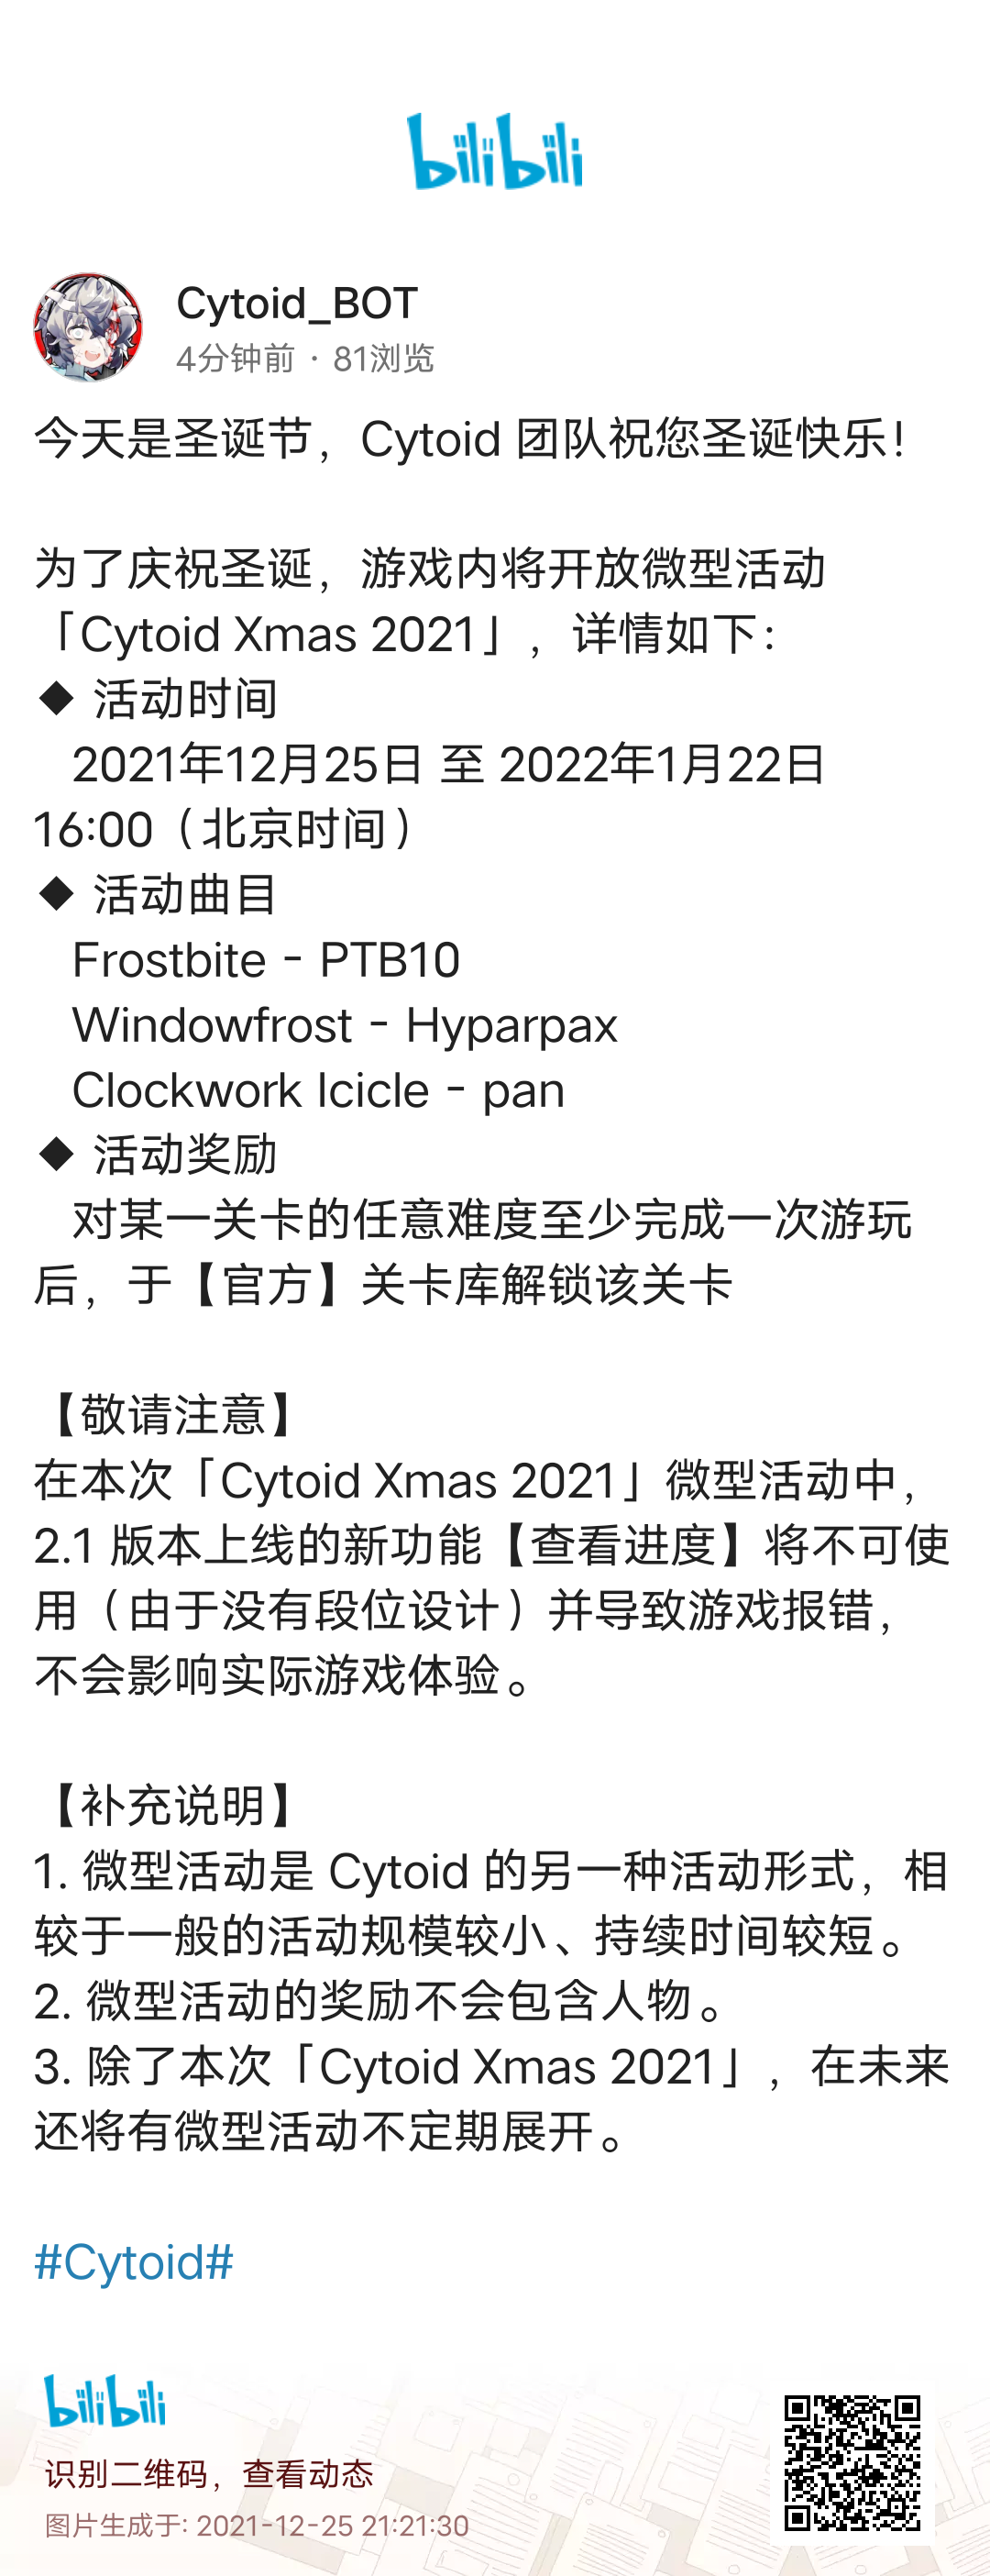 [搬运]Cytoid圣诞节活动“Cytoid Xmas 2021”预告